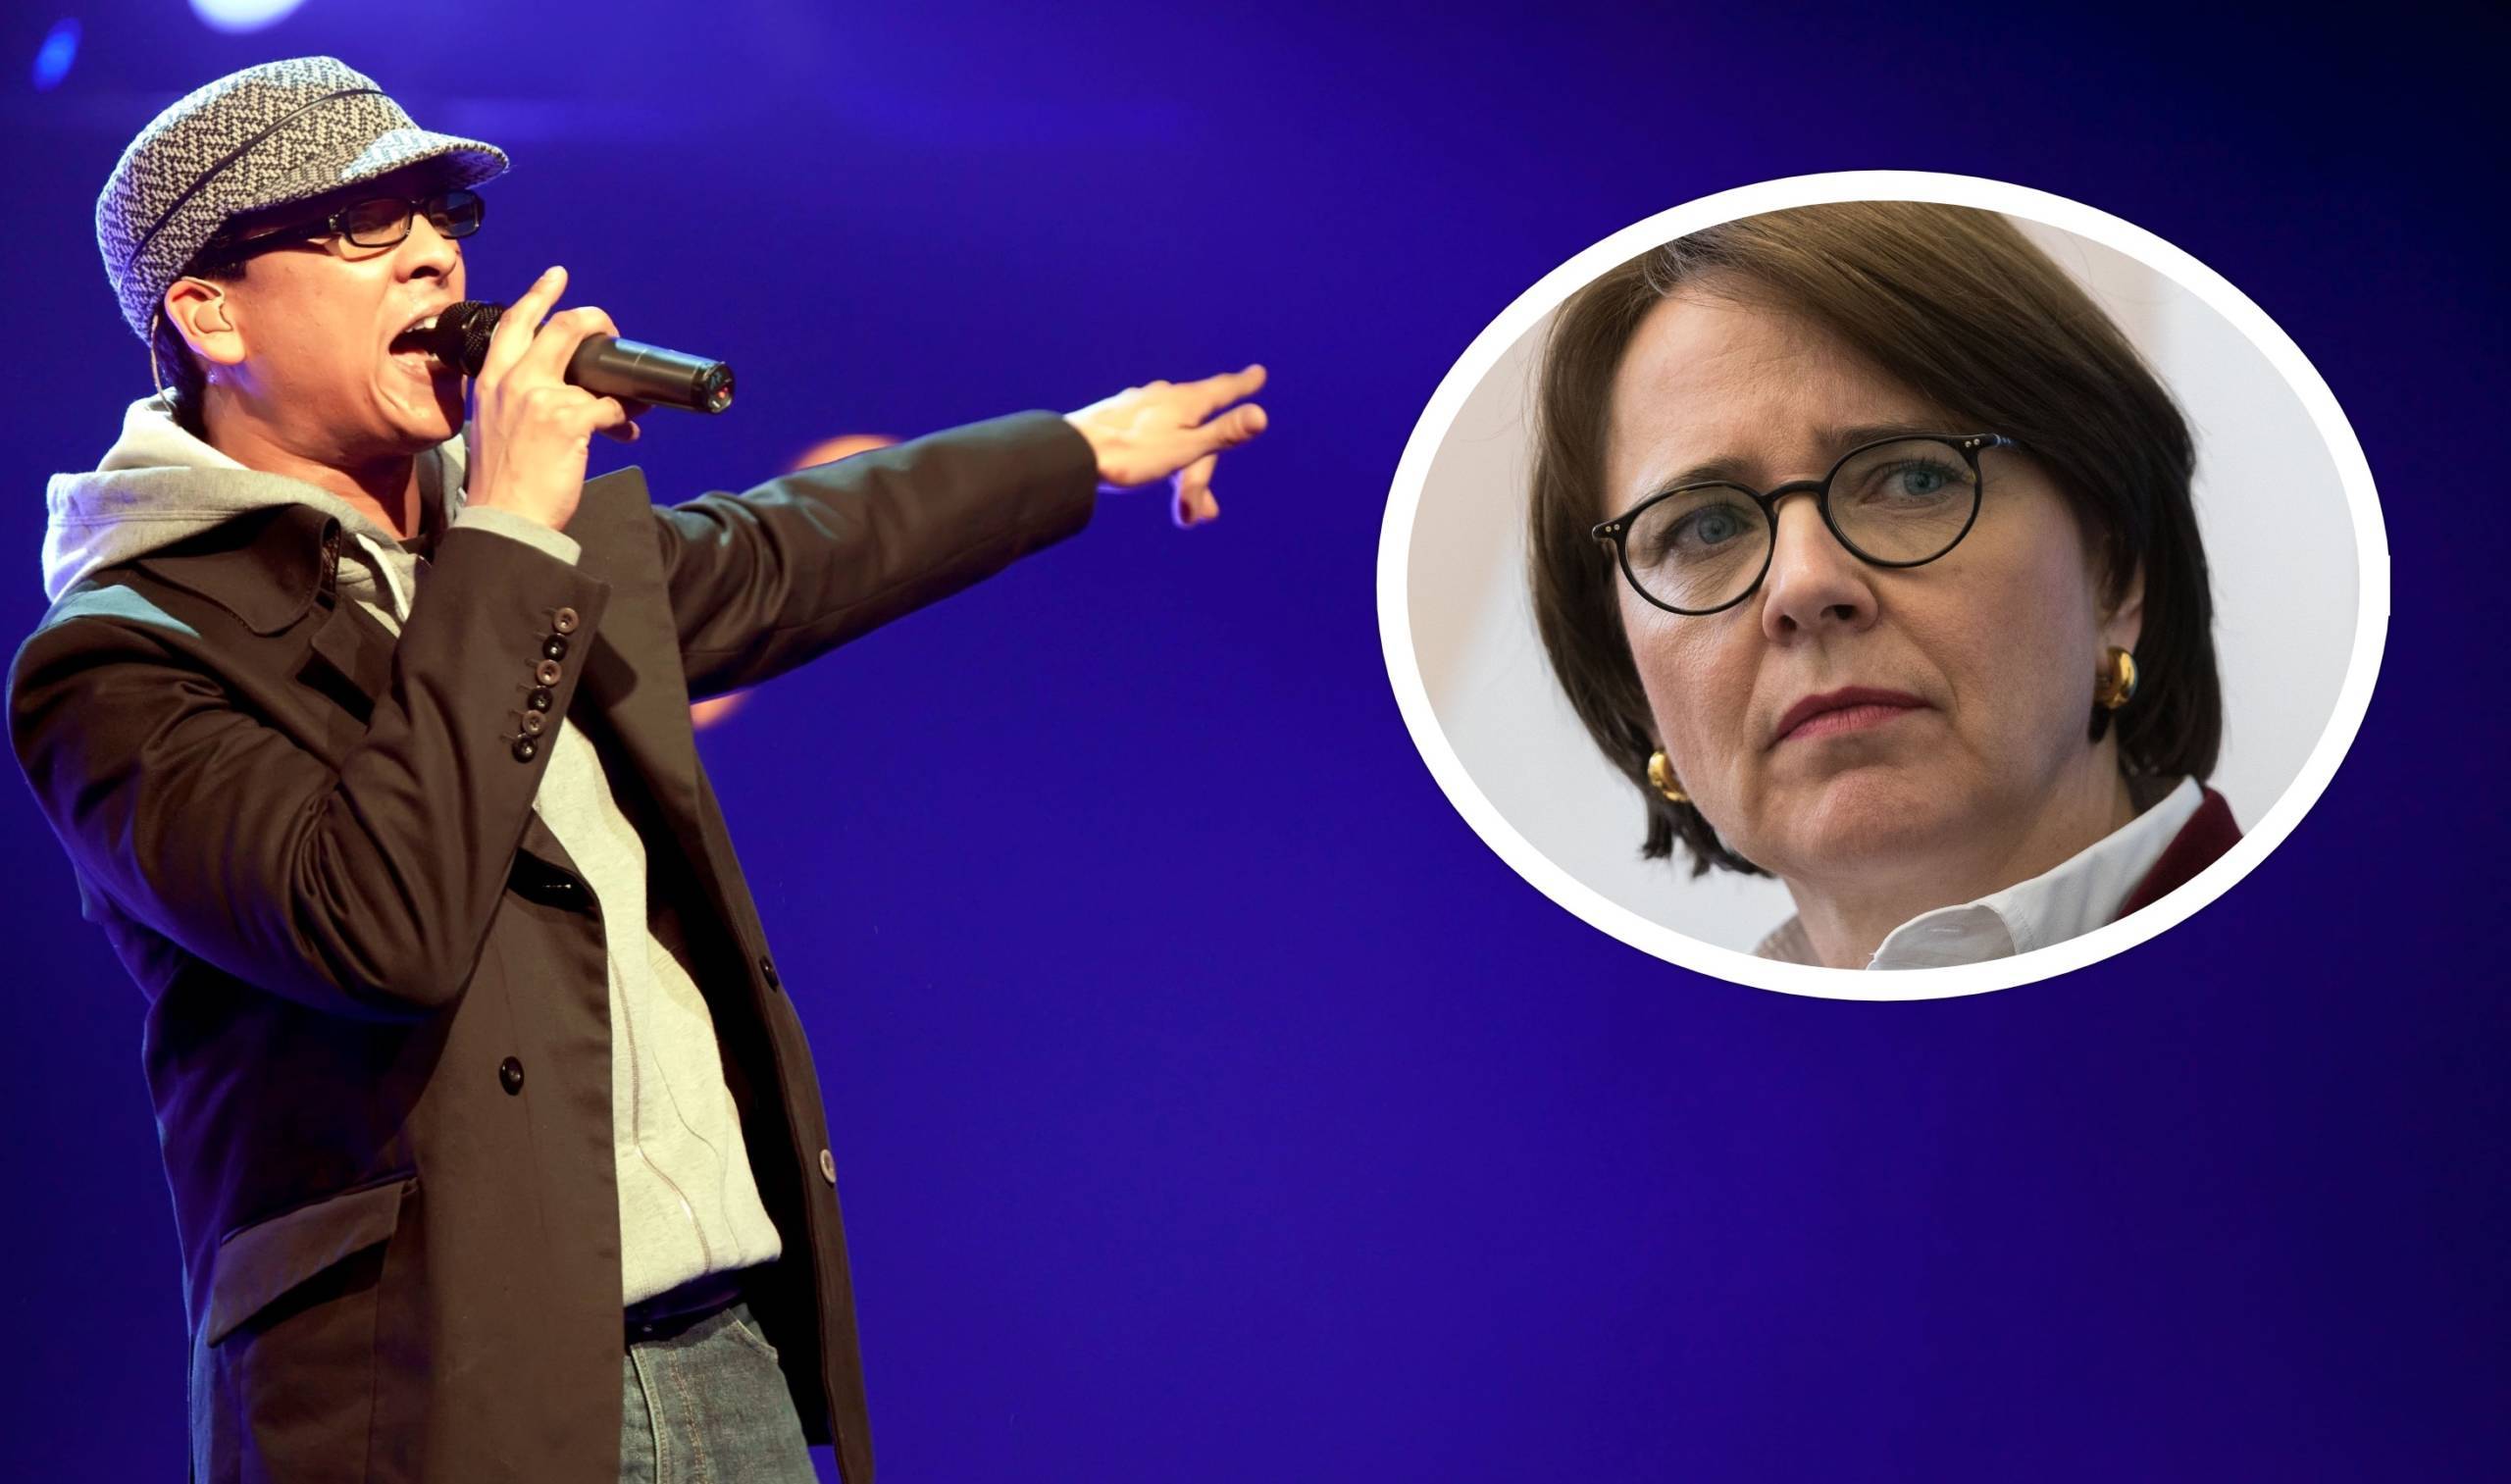 CDU-Politikerin Annette Widmann-Mauz ist vom Video von Xavier Naidoo erschrocken